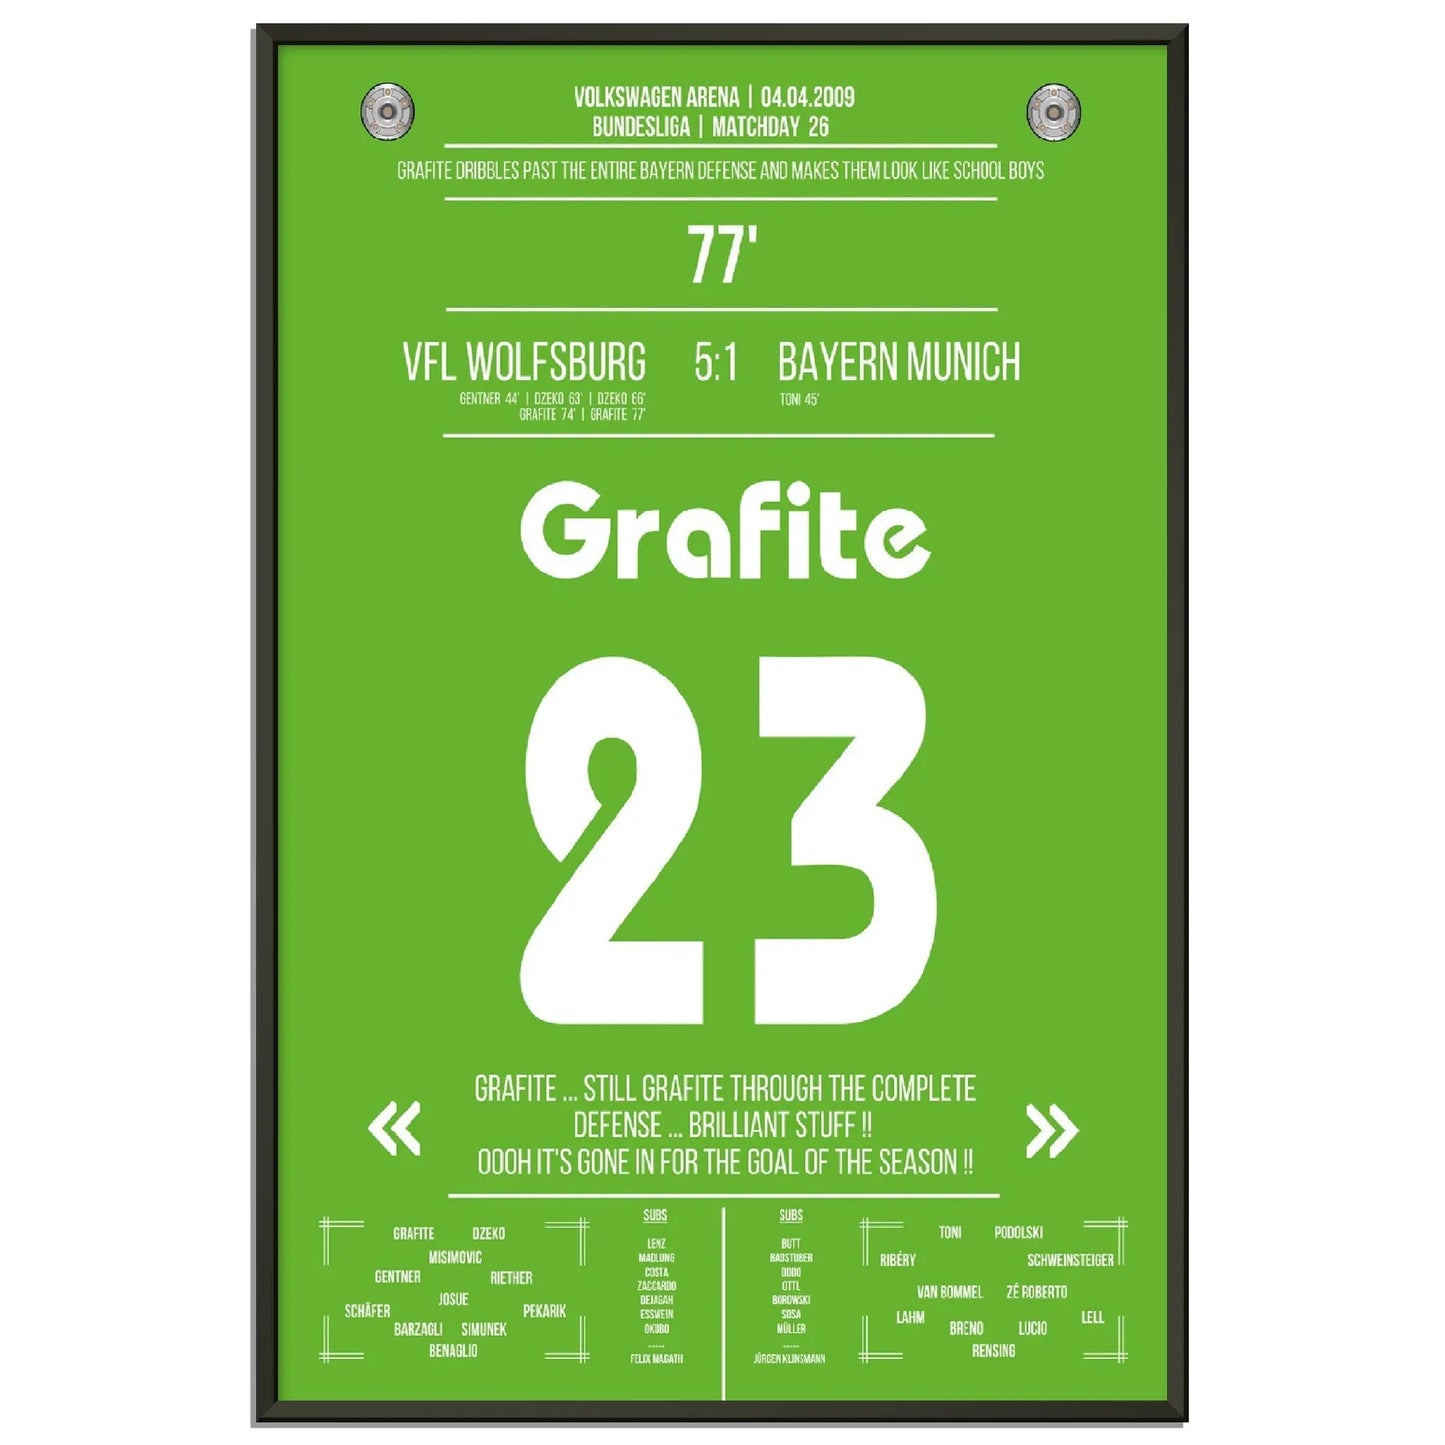 Grafite's legendäres Tor in Wolfsburg's 5-1 Sieg gegen die Bayern 2009 